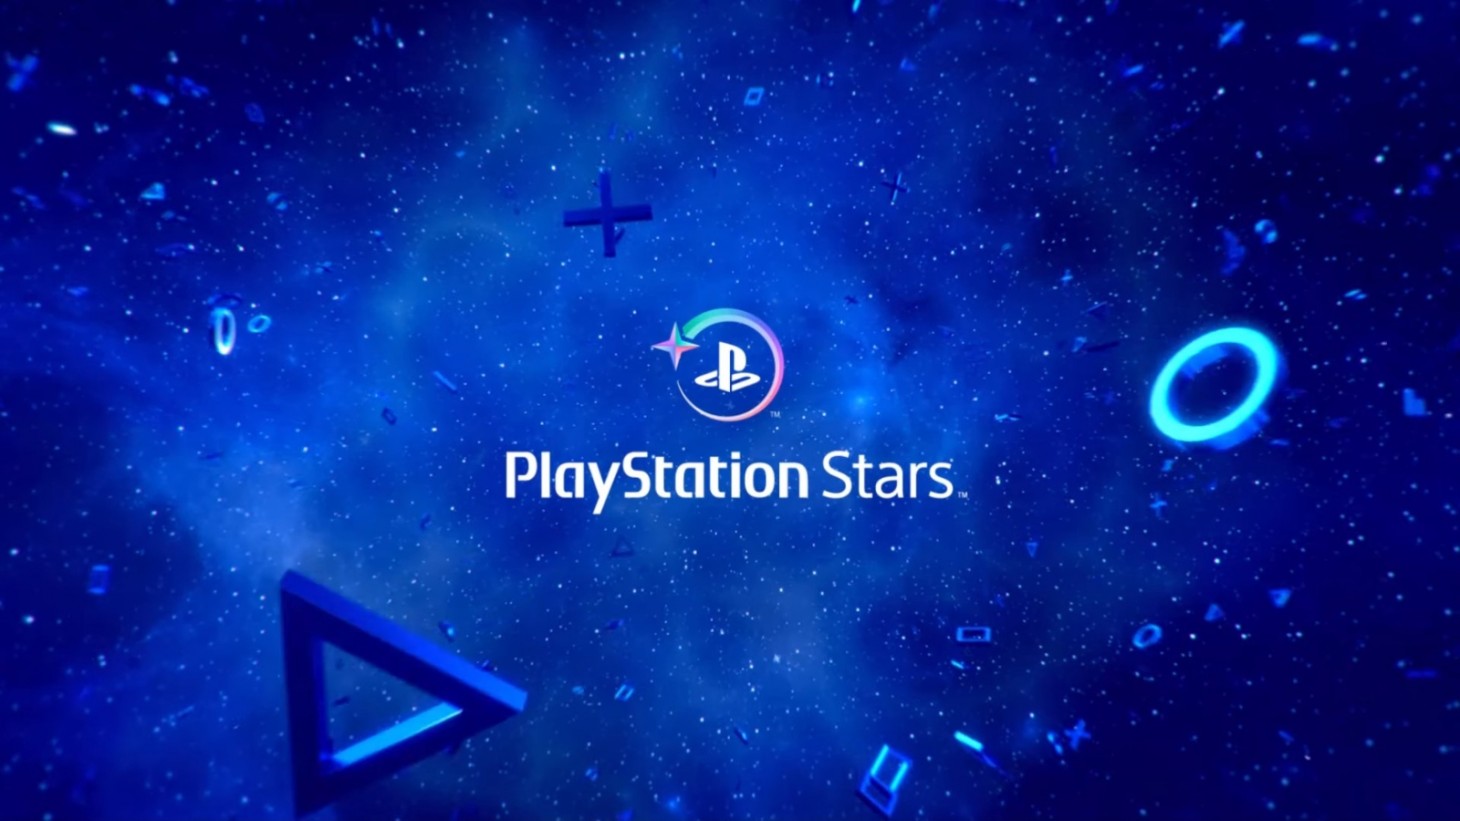 PlayStation Stars REWARDS Program Revealed - Definitely Not NFTs! 